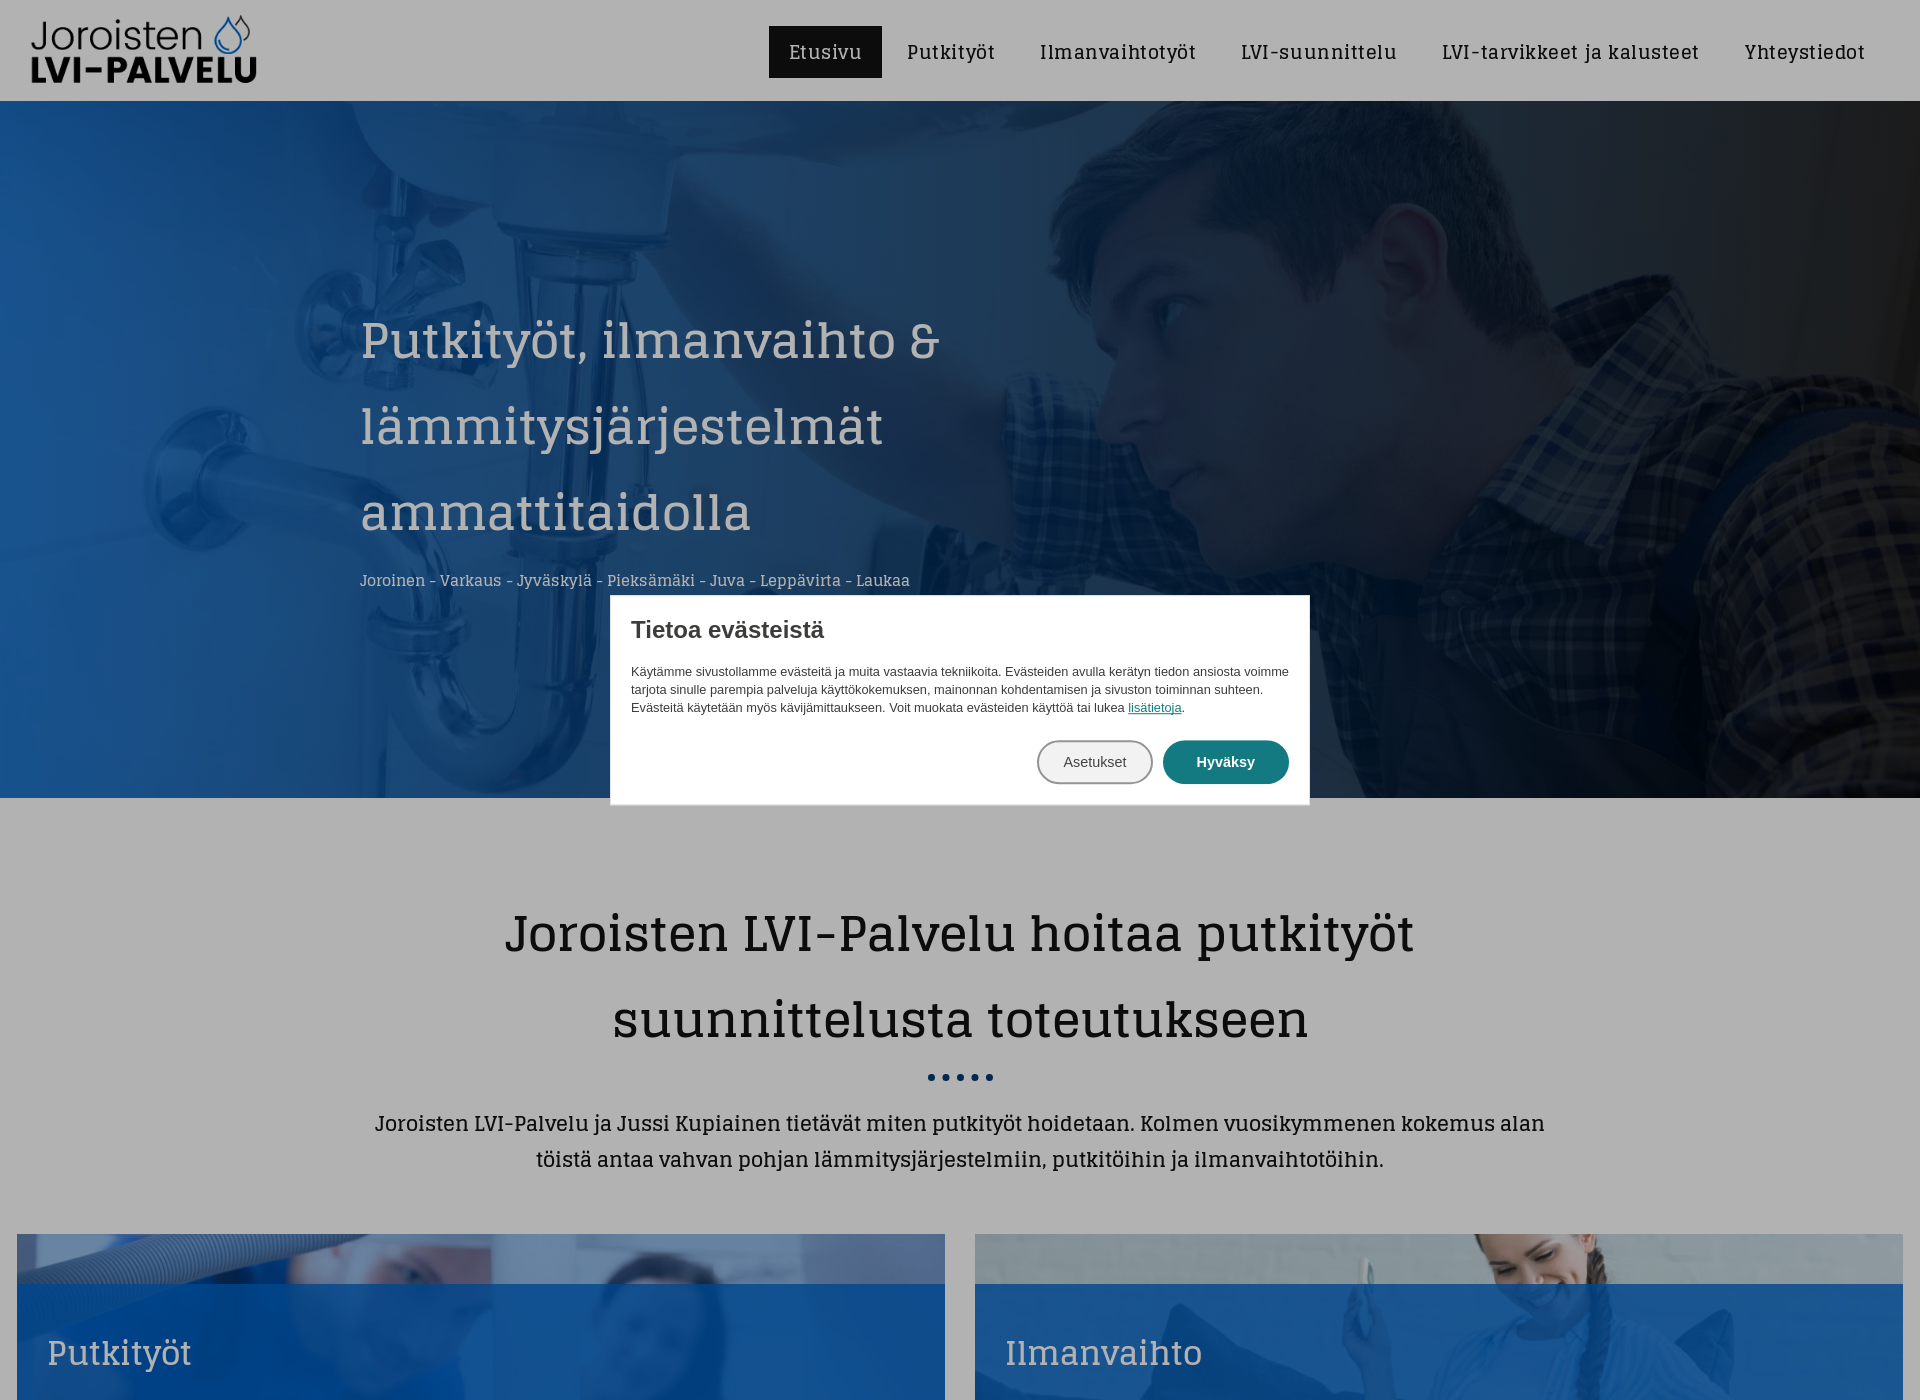 Näyttökuva joroistenlvipalvelu.fi